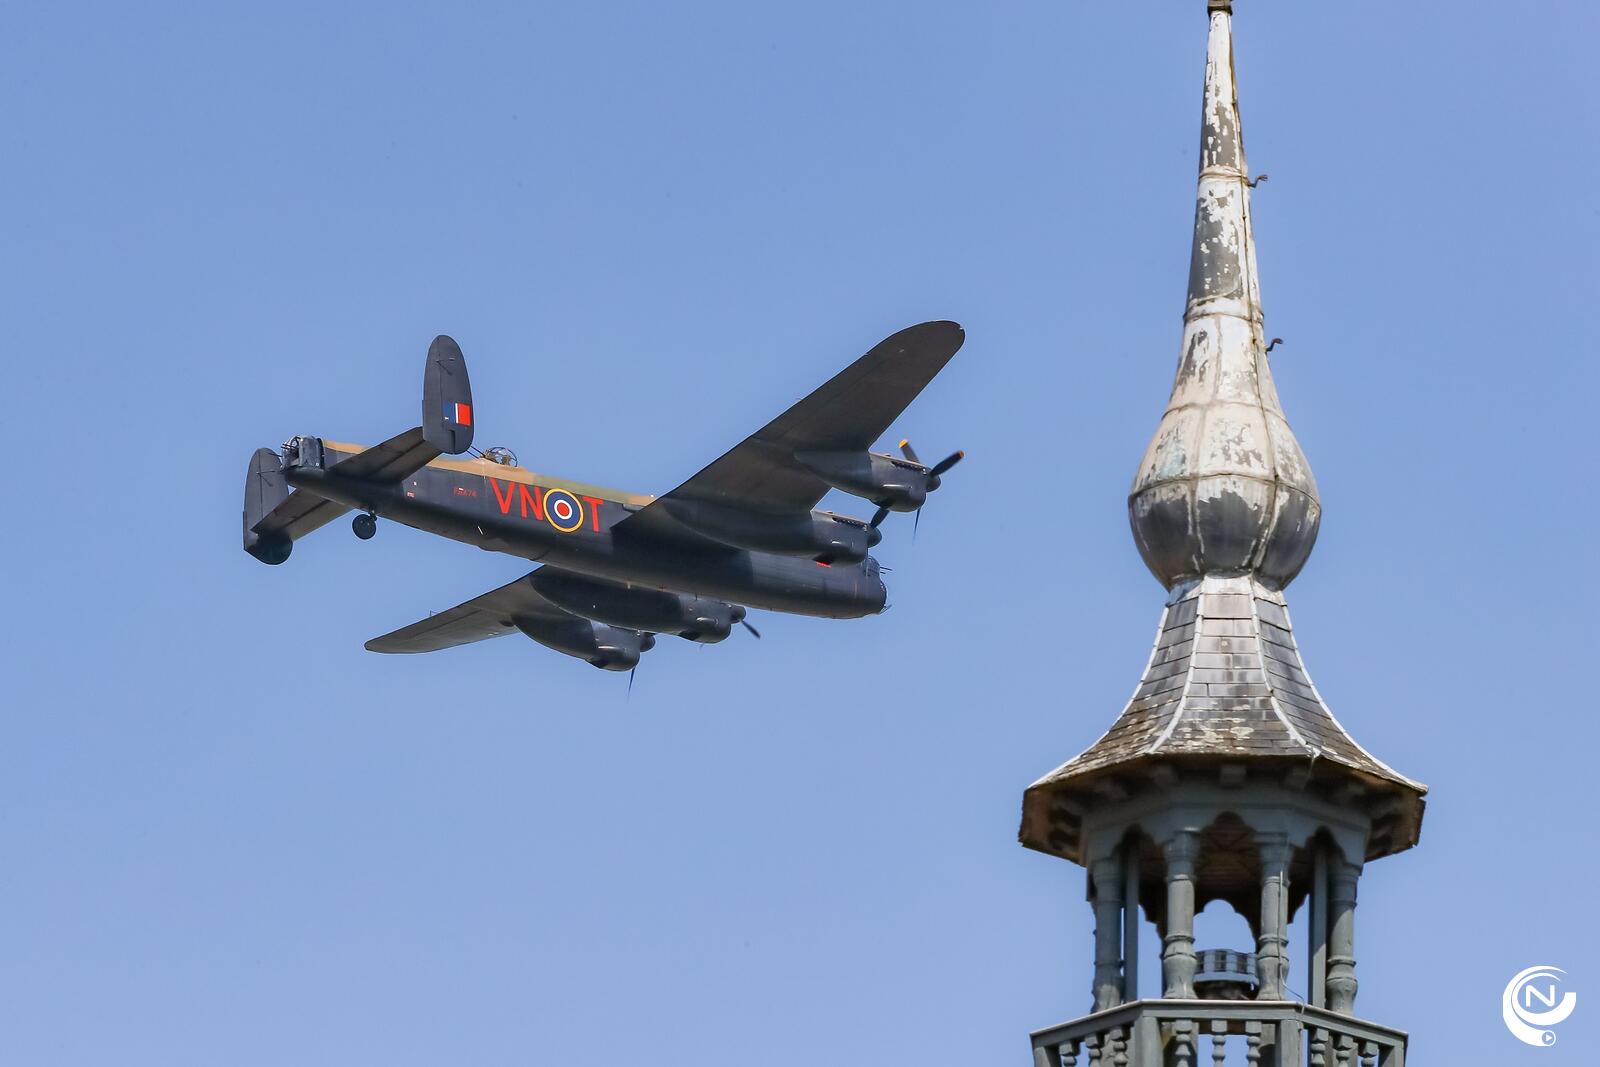 krans Middag eten verder Herdenking WOII : flypast laatste nog vliegwaardige LANCASTER-bommenwerper  boven Gierle | NNieuws